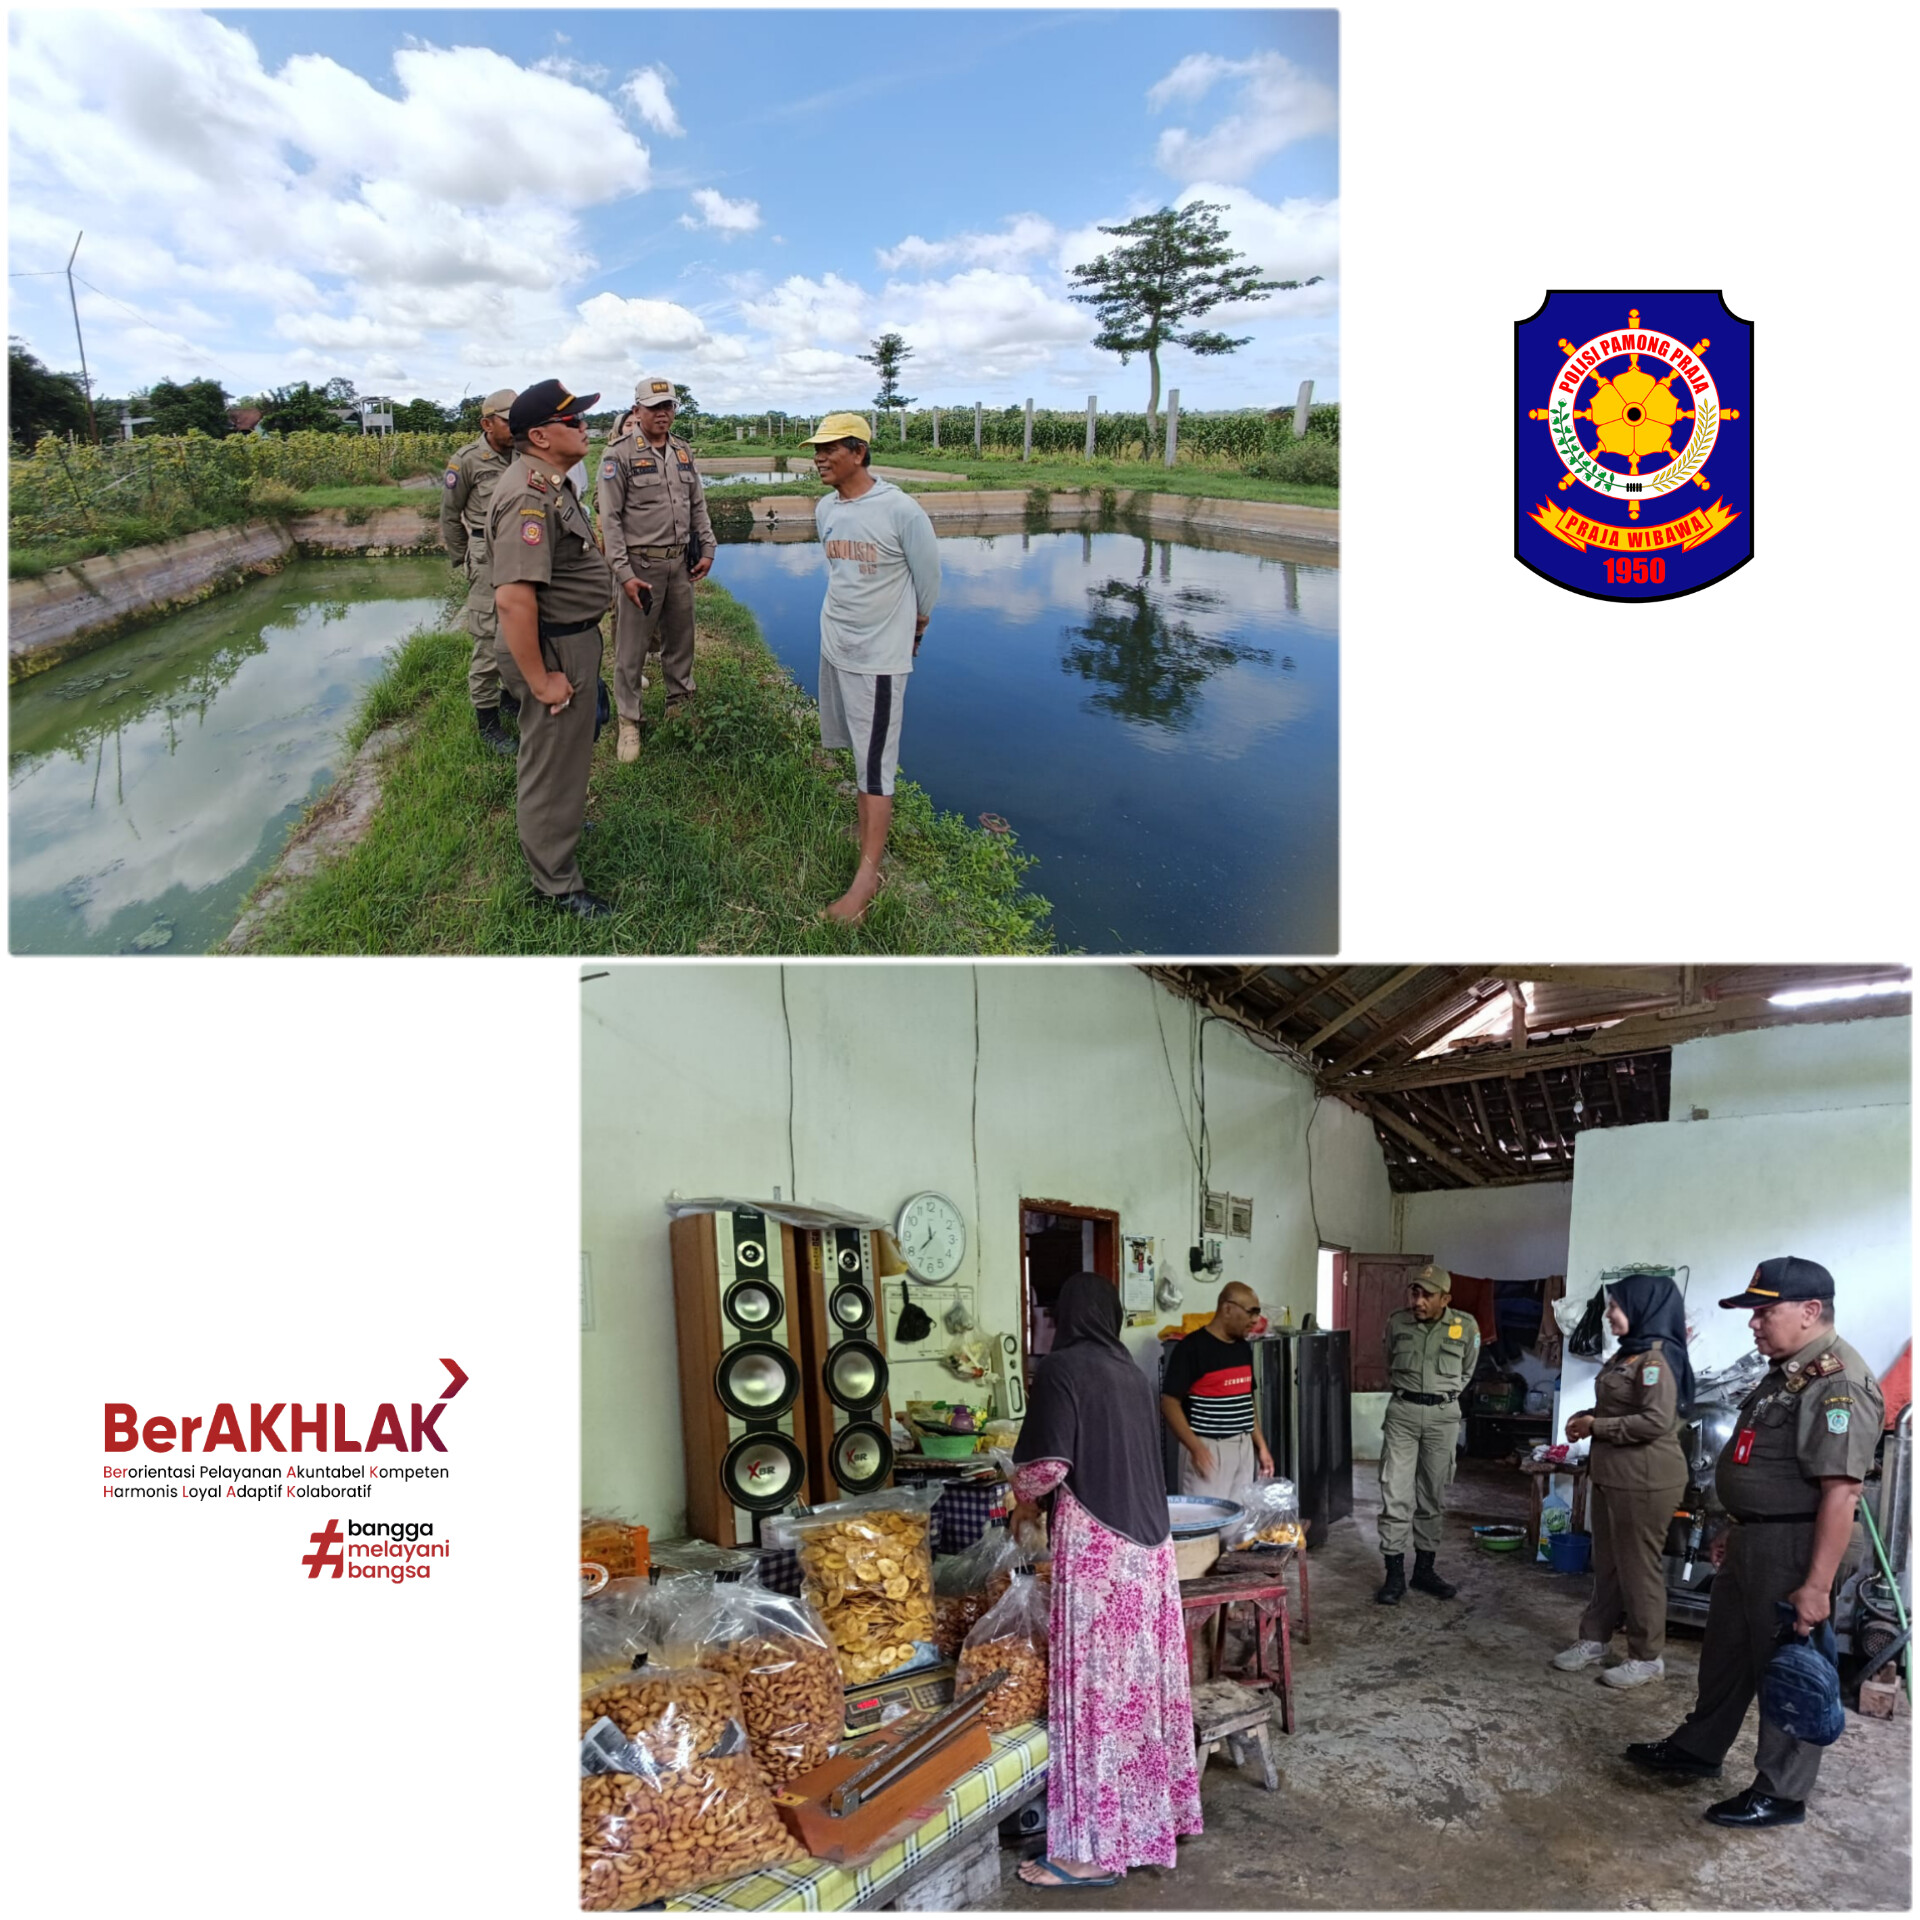 Pembinaan dan Pengawasan Kepada Pelaku Usaha di wilayah Kecamatan Rowokangkung Kabupaten Lumajang